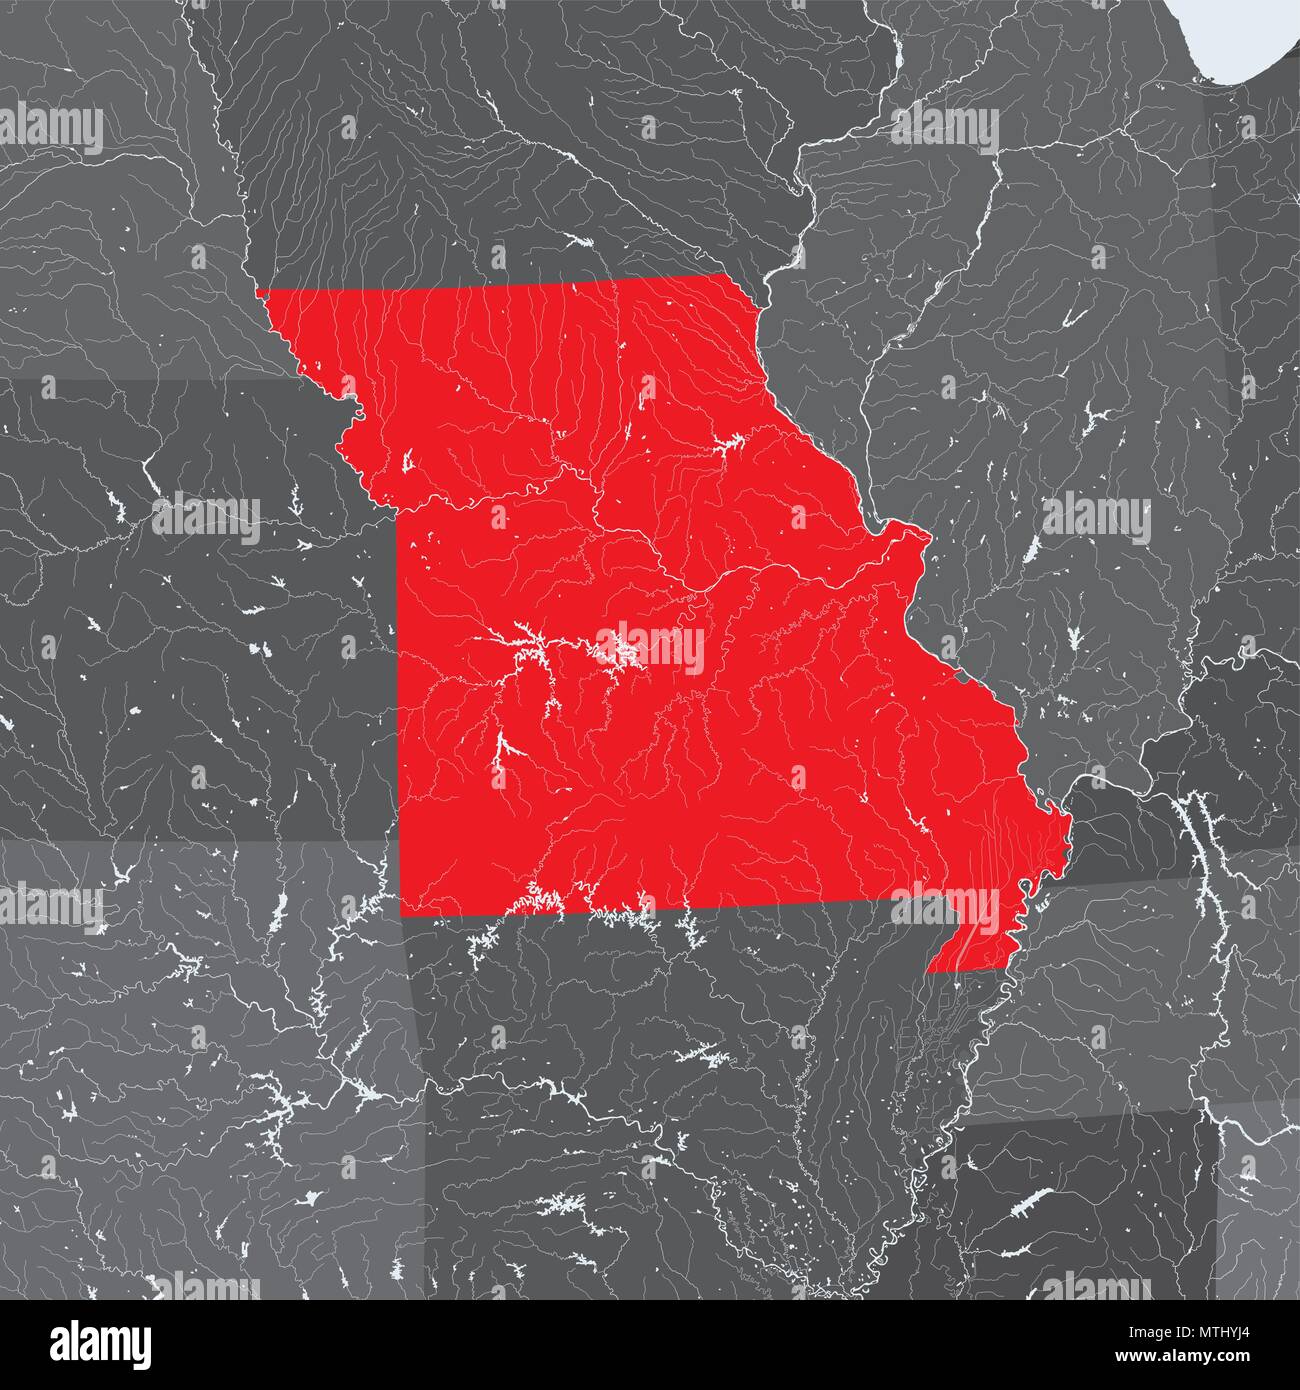 Les états américains - Carte du Missouri. Fait main. Les rivières et lacs sont indiqués. Merci de regarder mes autres images de la série cartographique - ils sont tous très détail Illustration de Vecteur